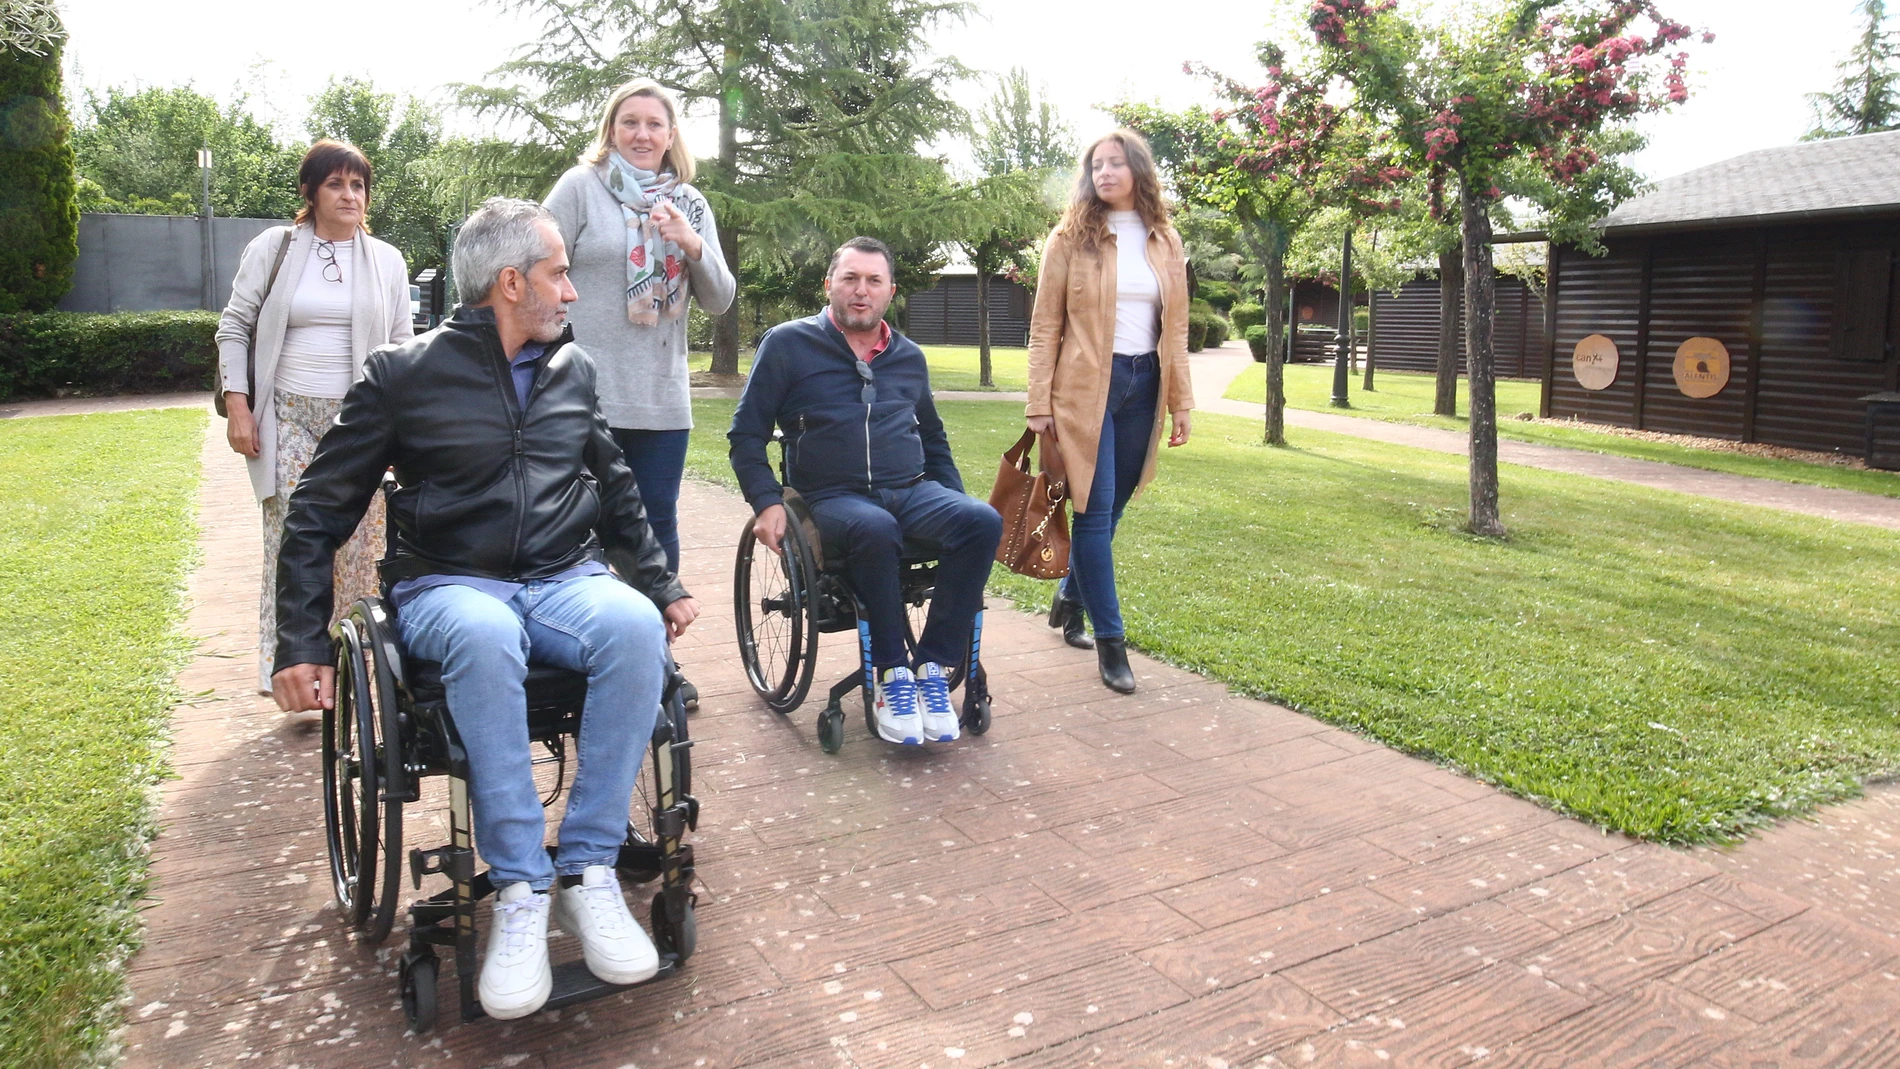 La consejera Isabel Blanco visita "El Bosque de los Sueños" junto a Ester Muñoz y los dirigentes de Aspaym